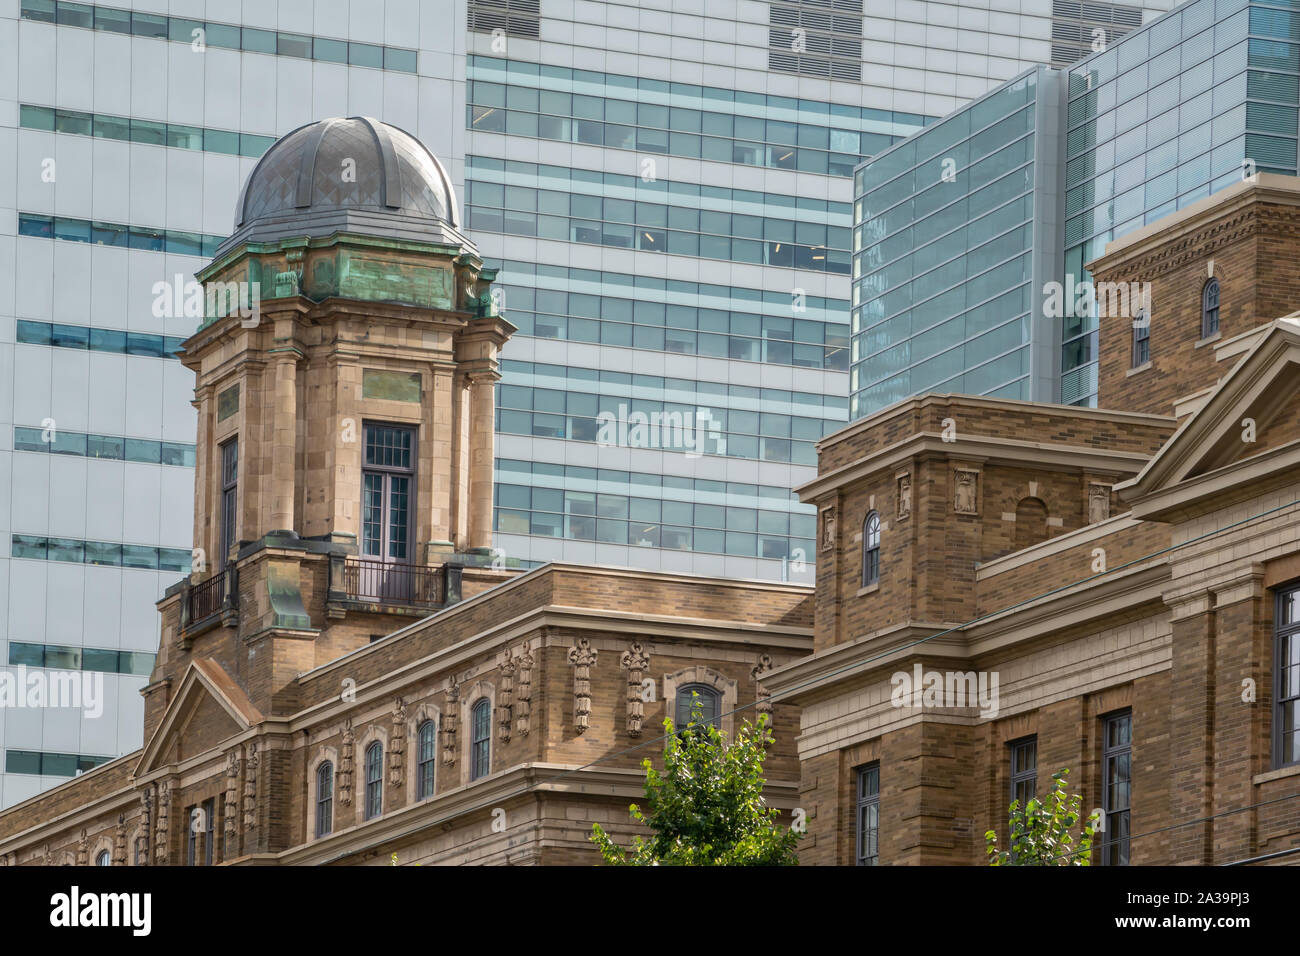 Coupole sur un bâtiment du patrimoine dans le centre-ville de Toronto (Ontario) entouré par l'architecture moderne en verre et acier. Banque D'Images